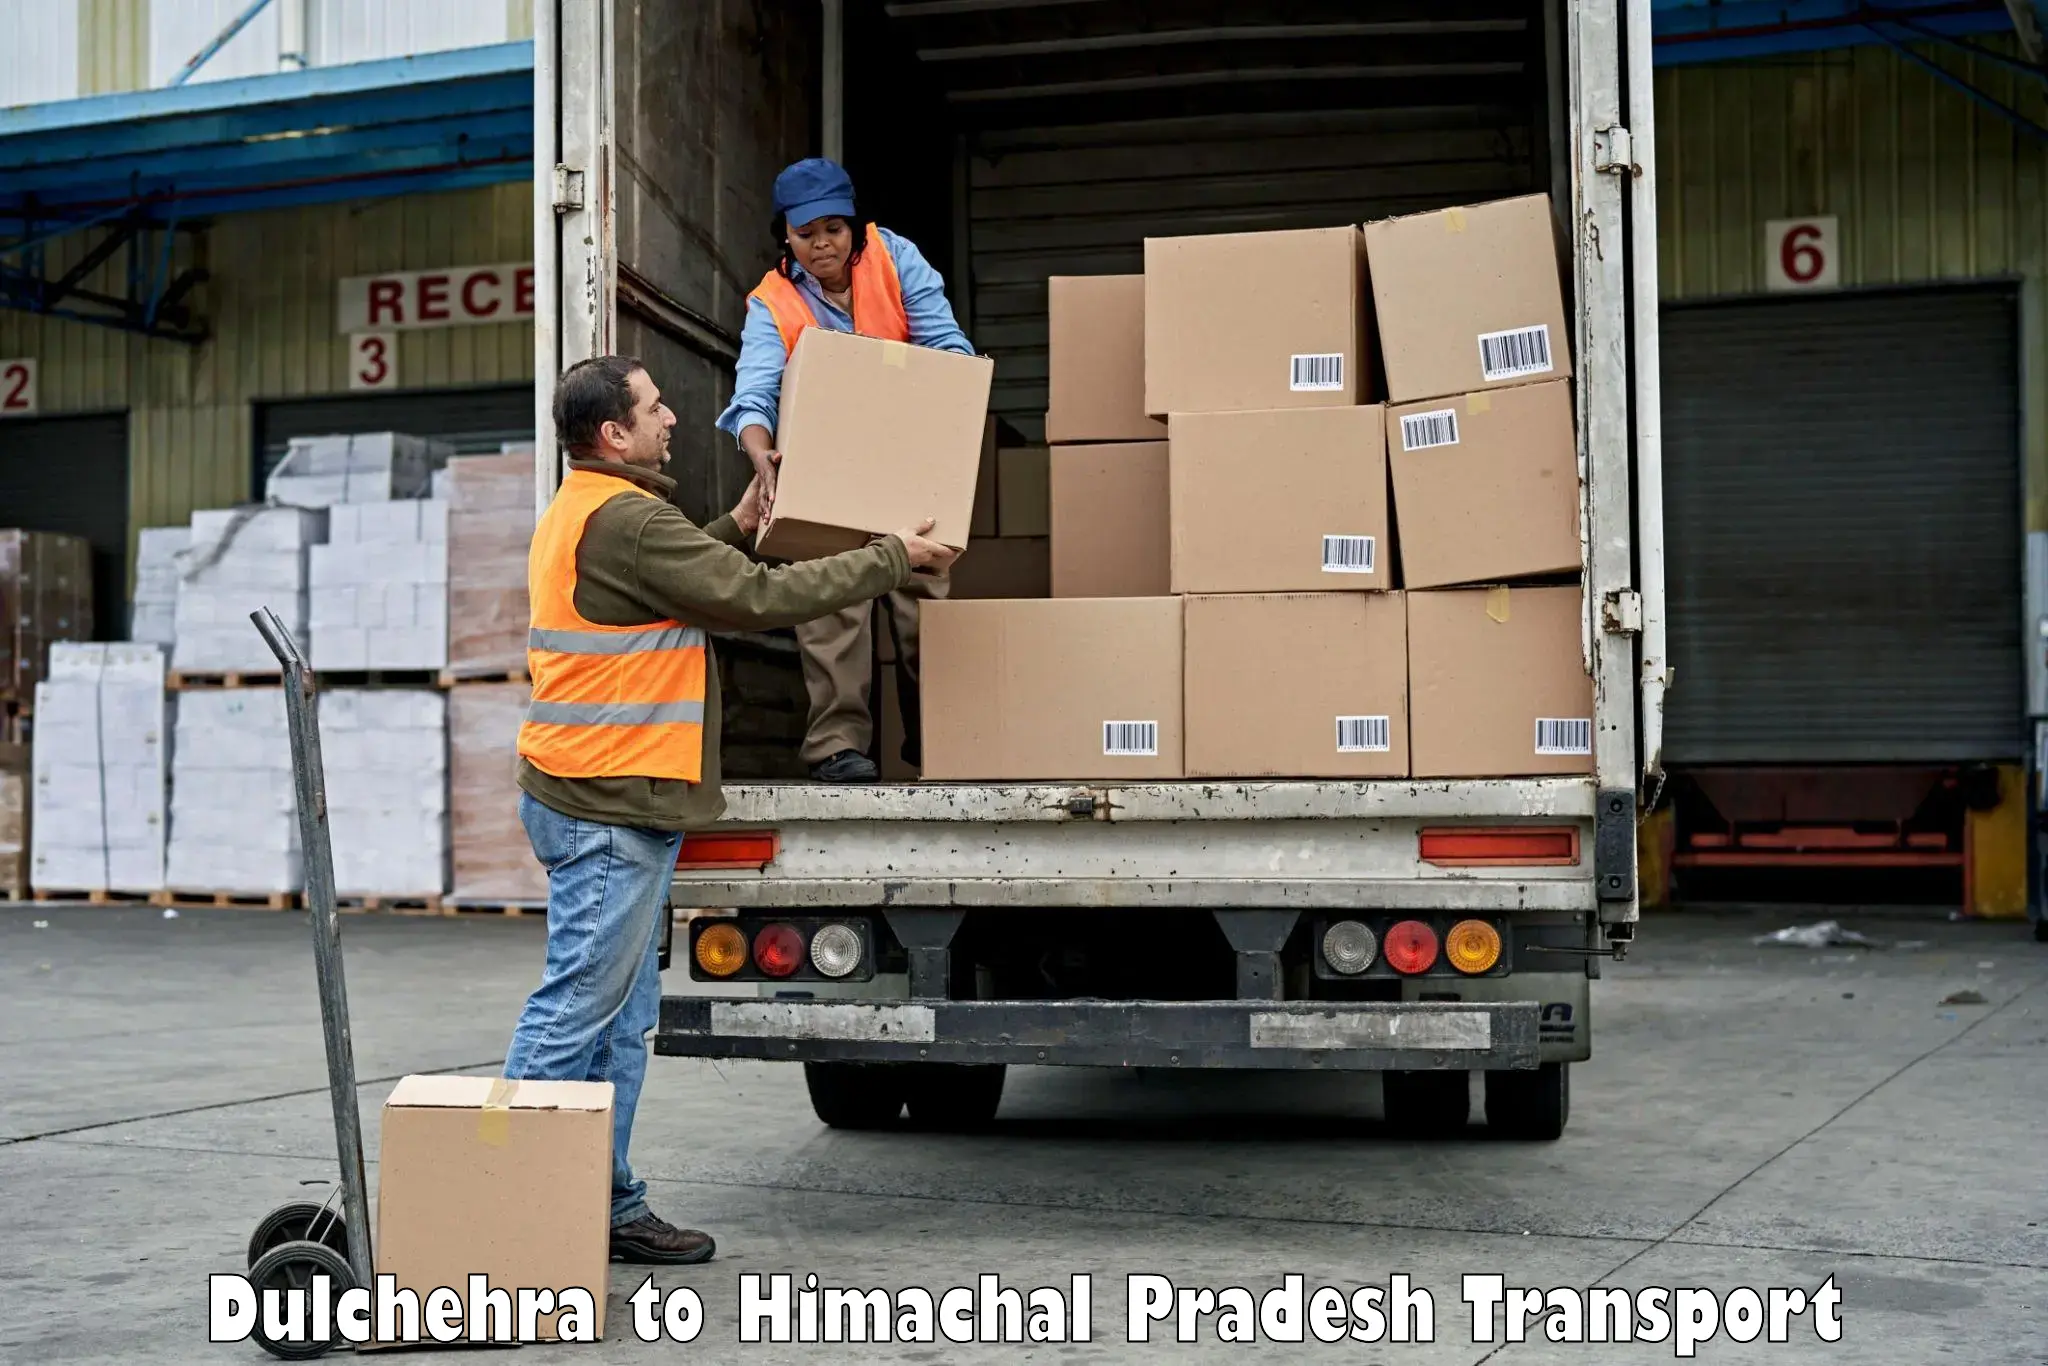 Daily parcel service transport Dulchehra to Dehra Gopipur